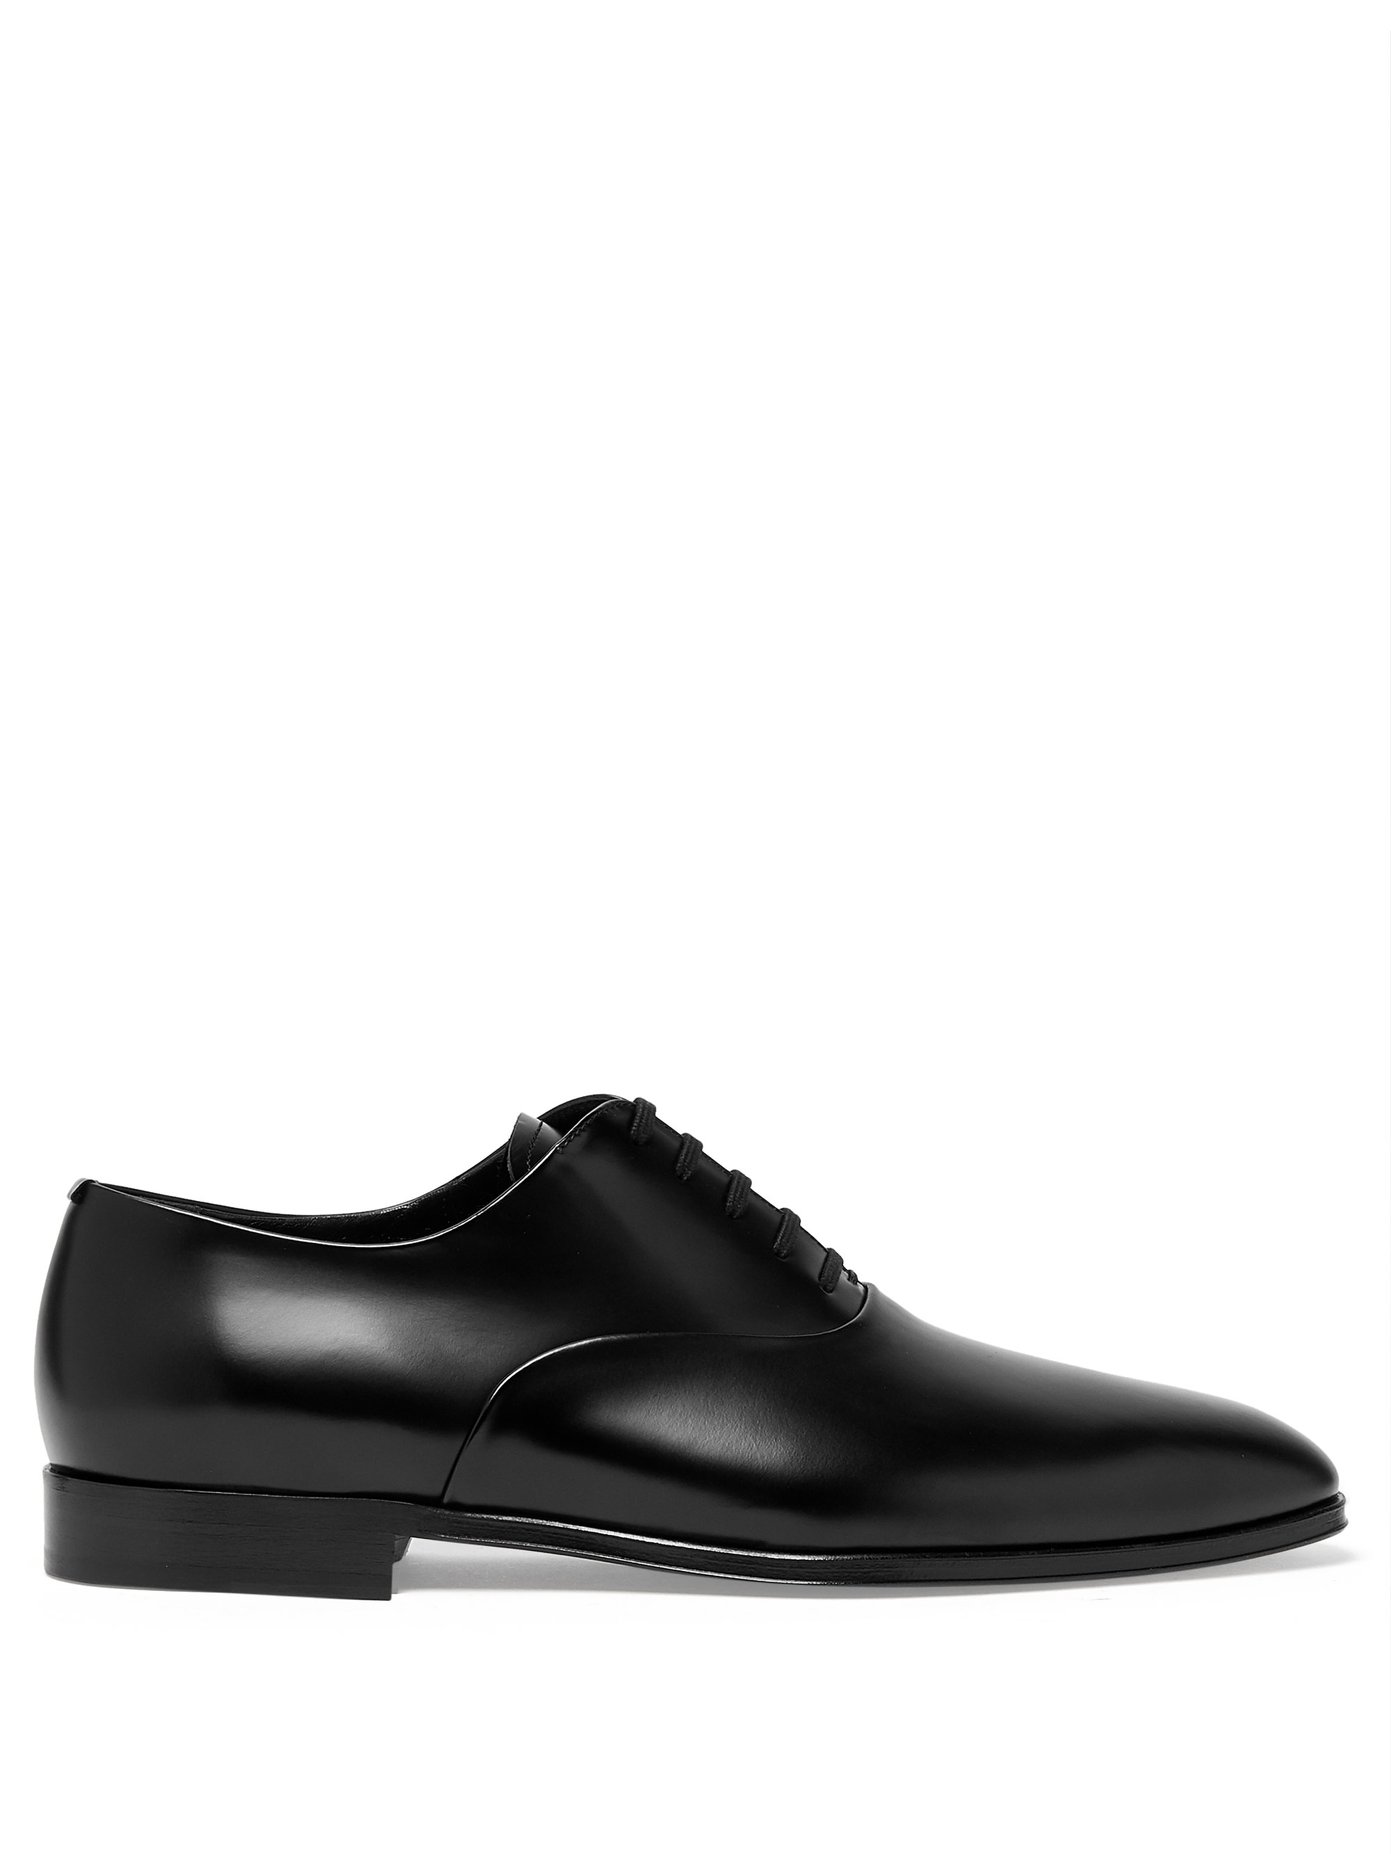 Mennington leather Oxford shoes 